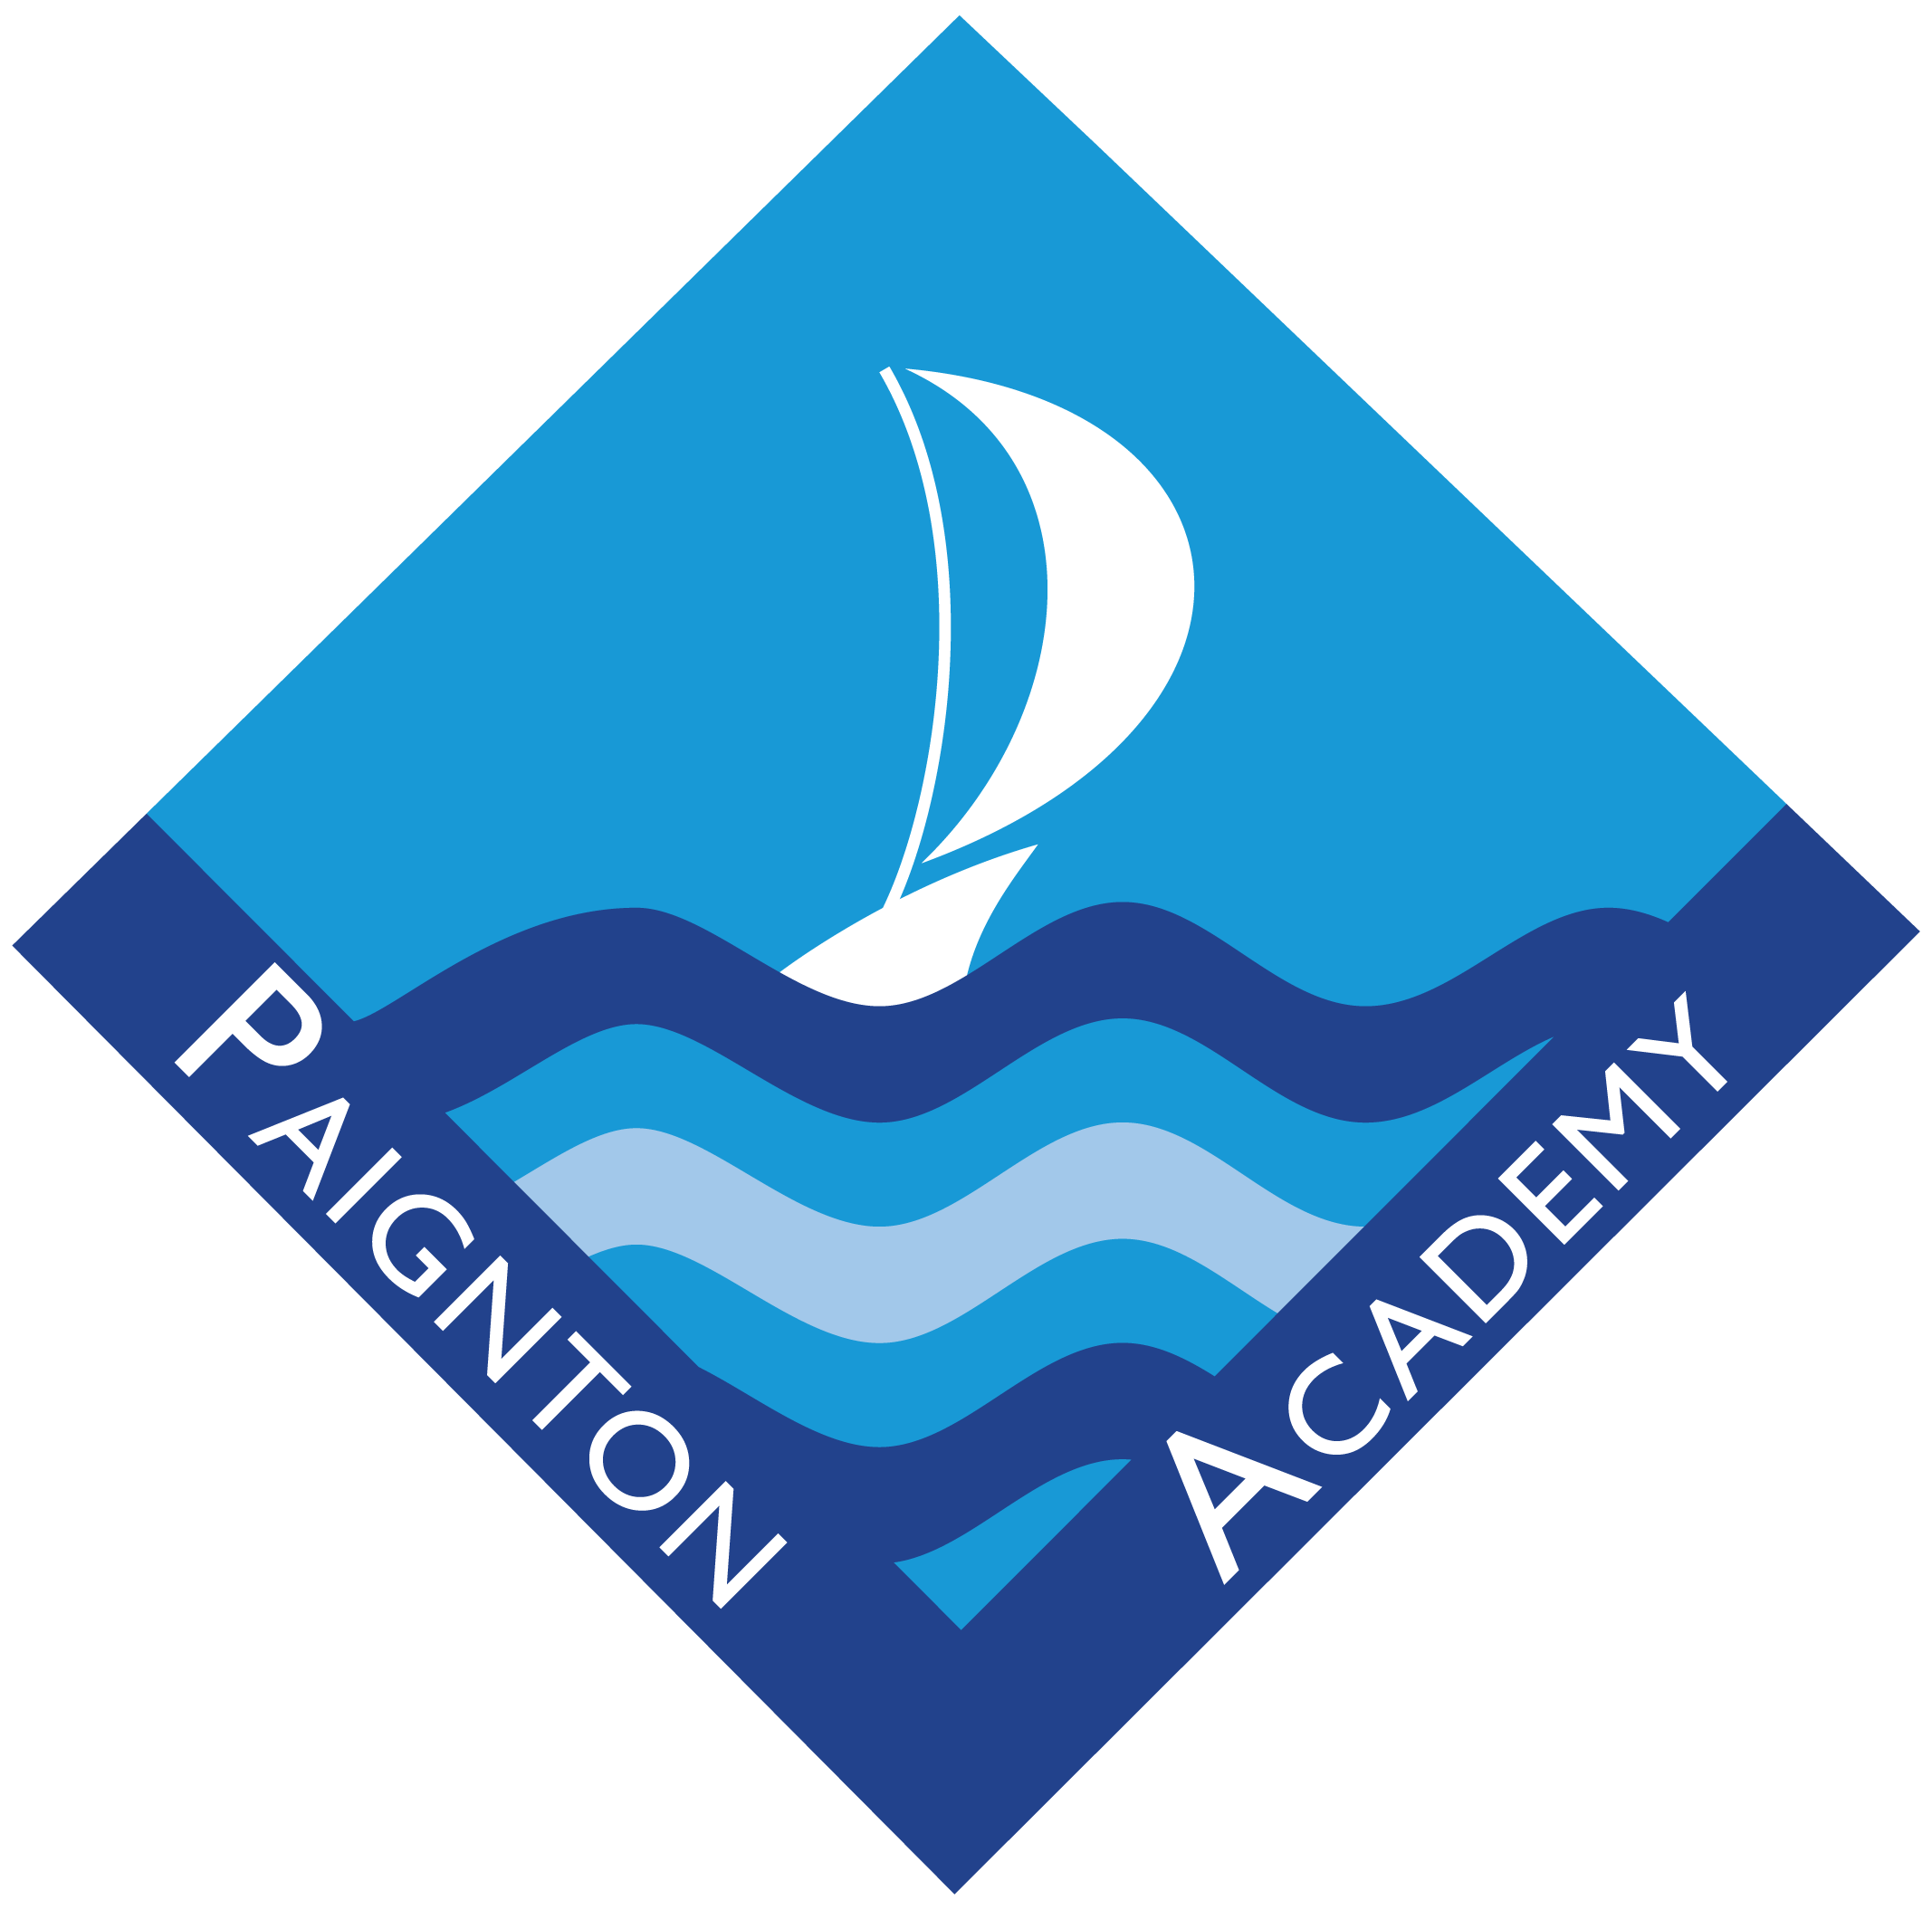 Paignton Academy logo - White border 2019.png